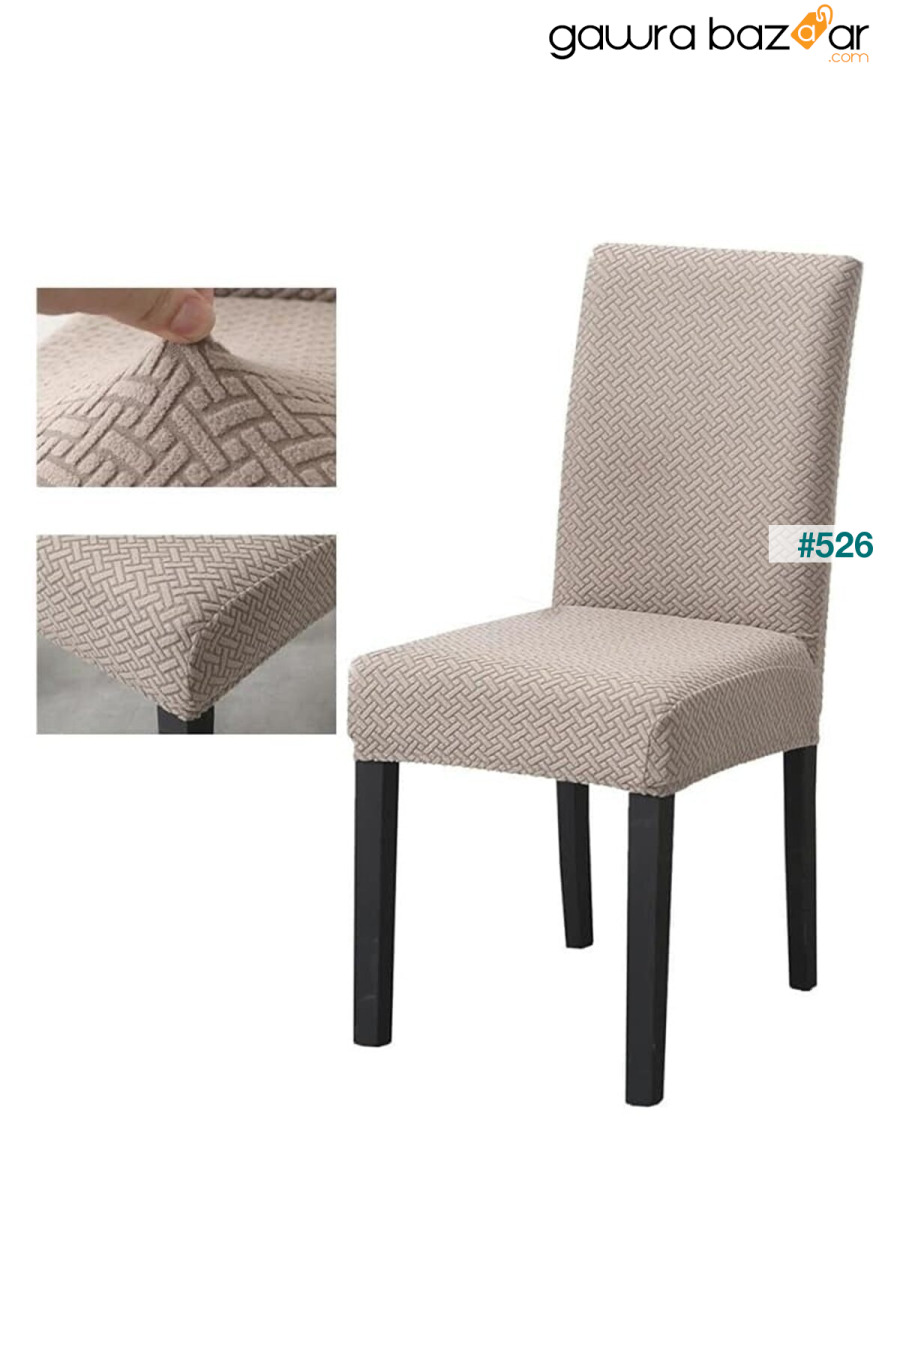 غطاء كرسي عالي الجودة ، ليكرا ، قابل للغسل ، قطعة واحدة لون منك [# 4] ÖZMAKAN 1